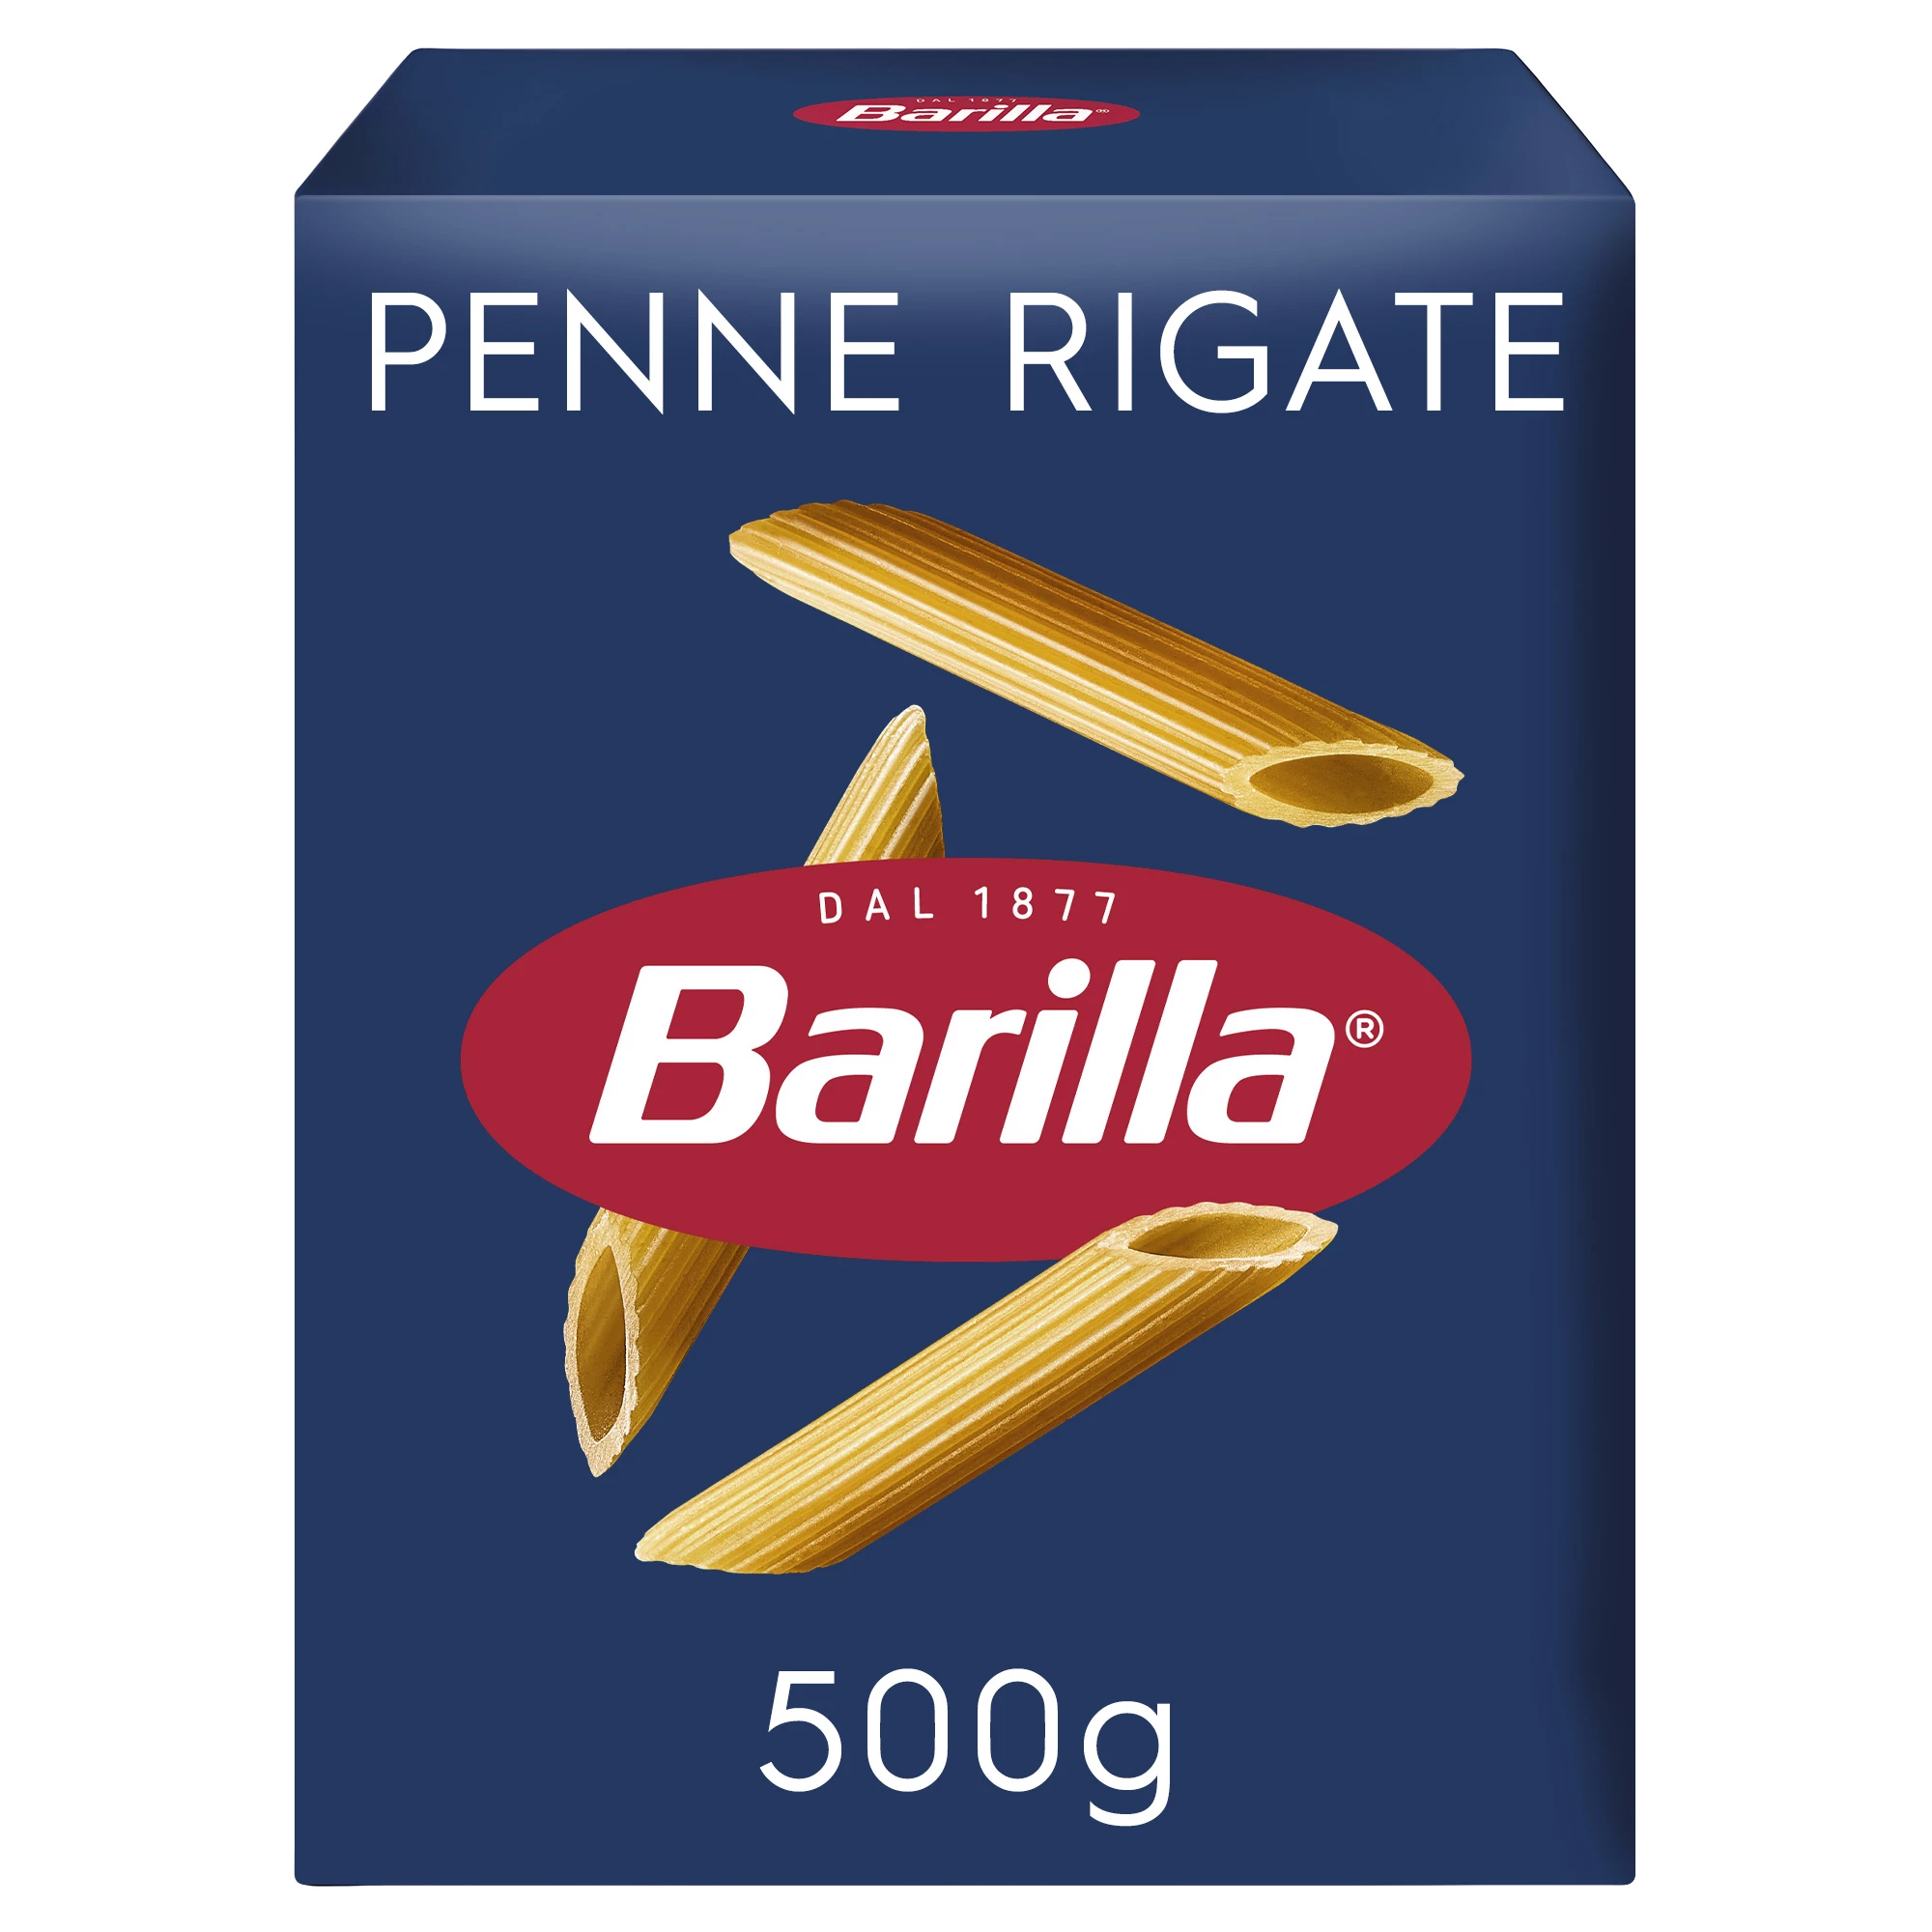 Penne Rigate Pasta, 500g - BARILLA